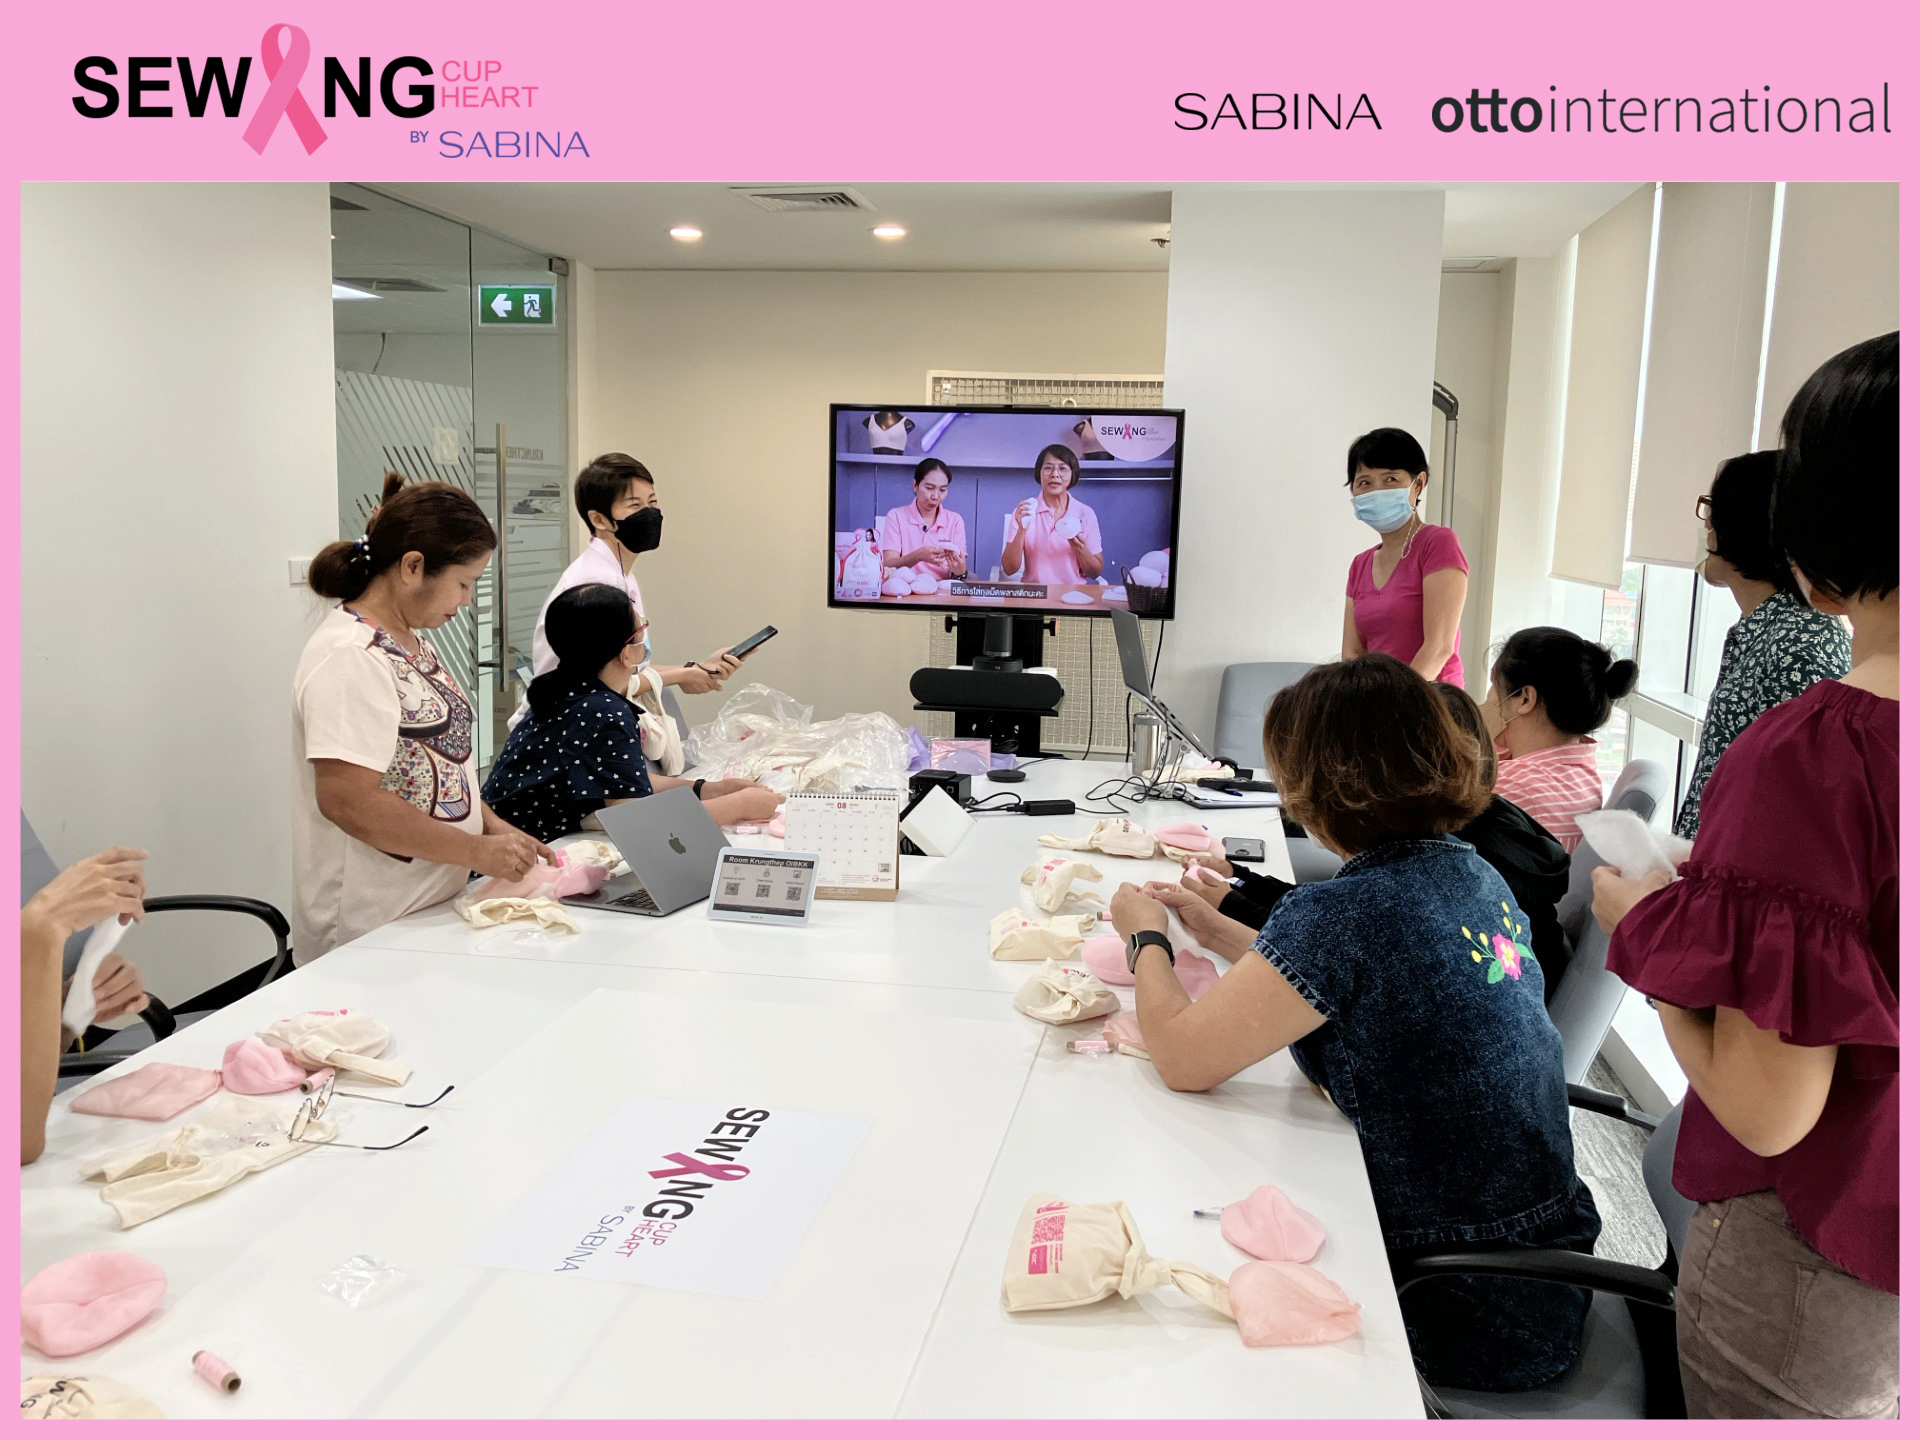 บริษัท อ๊อตโต้ อินเตอร์เนชั่นแนล (ฮ่องกง) ลิมิเต็ด ร่วมเย็บเต้านมเทียม กับโครงการ Sabina Sewing Cup Sewing Heart